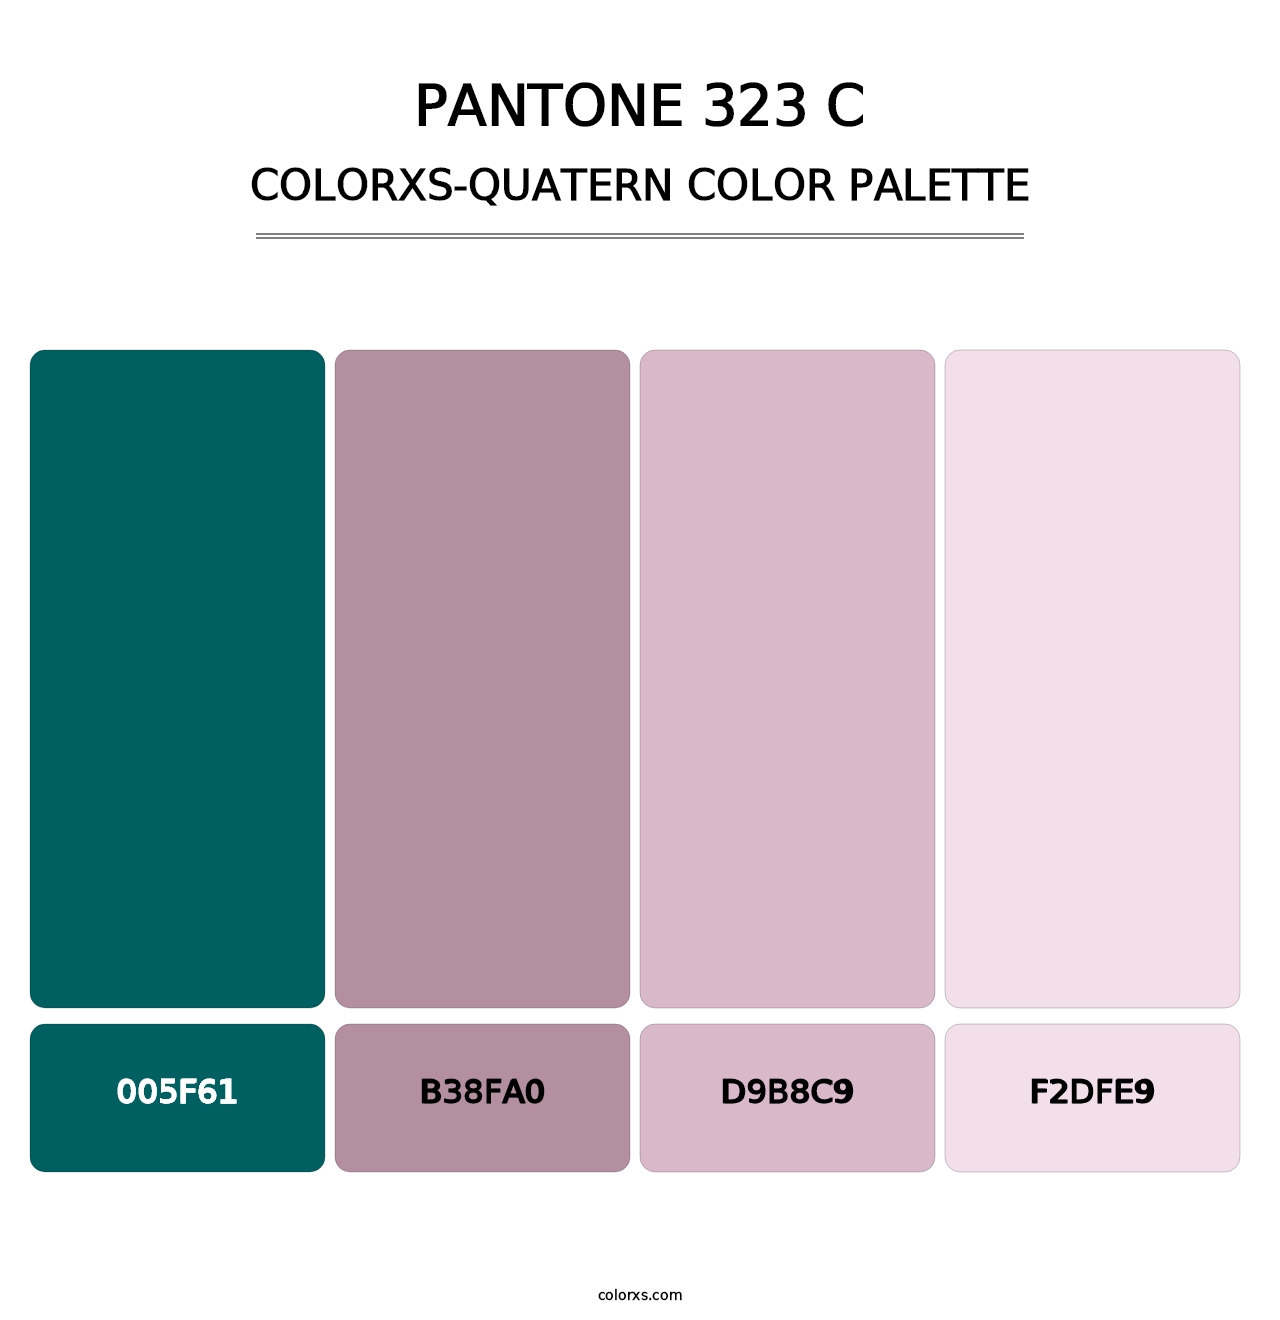 PANTONE 323 C - Colorxs Quatern Palette